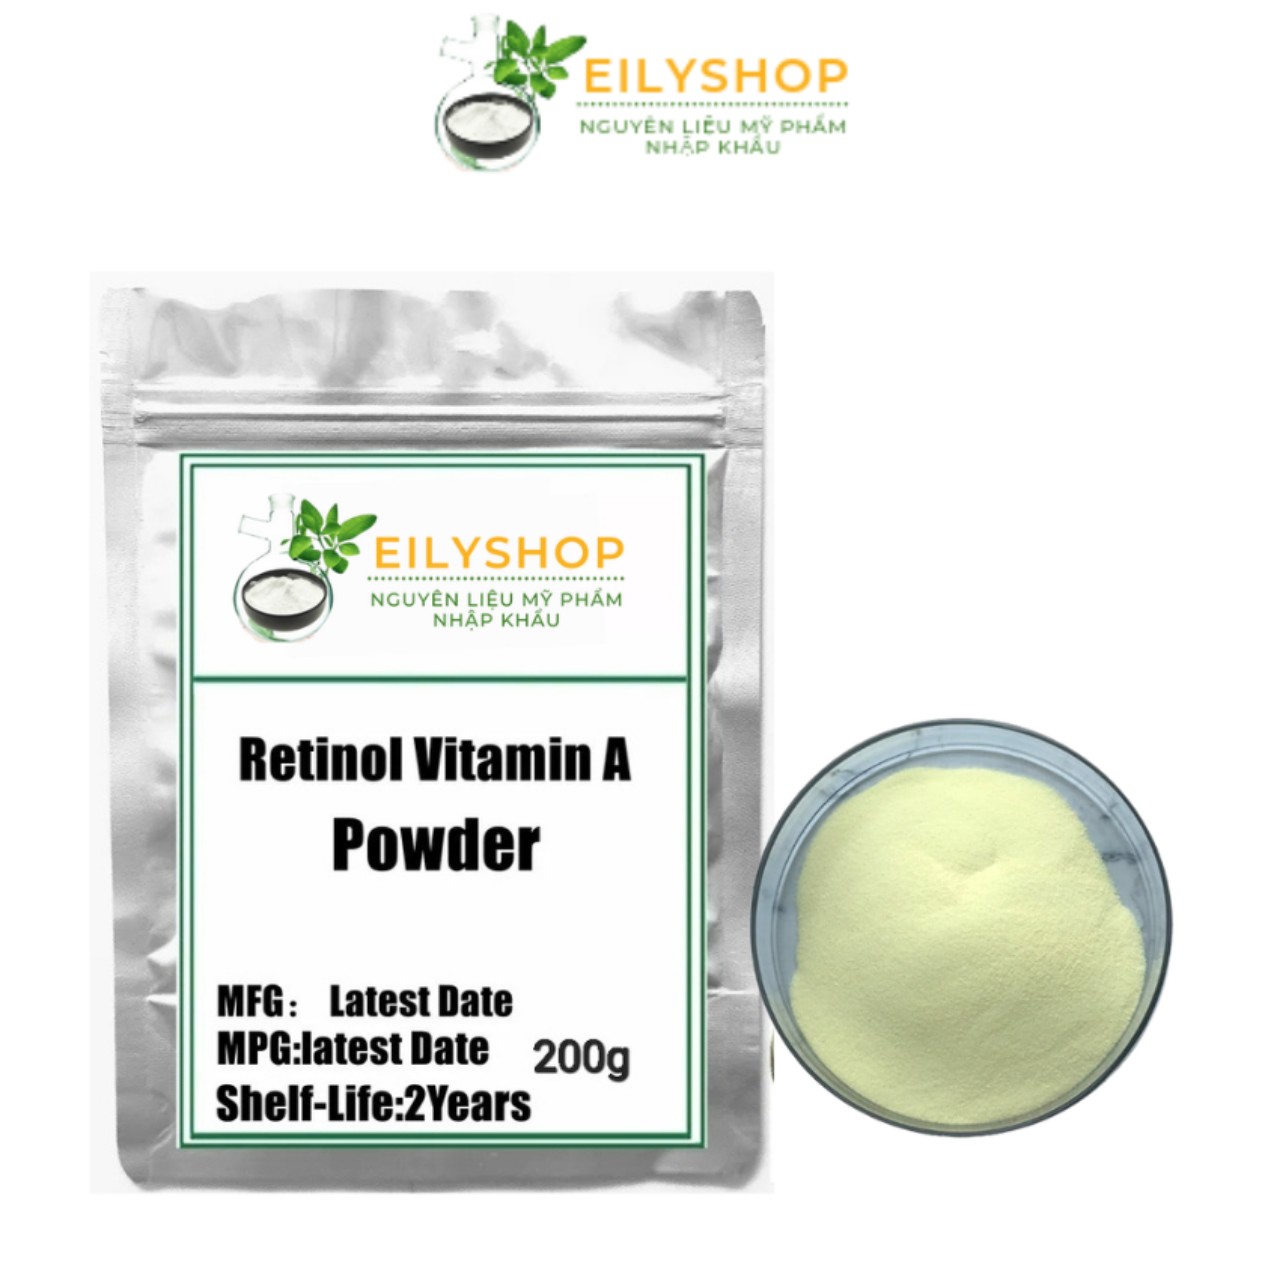 Bột Vitamin A (Retinol) - siêu mịn làm đẹp, Nguyên liệu Dược - Mỹ Phẩm - nguyên liệu mỹ phẩm Nhập Khẩu